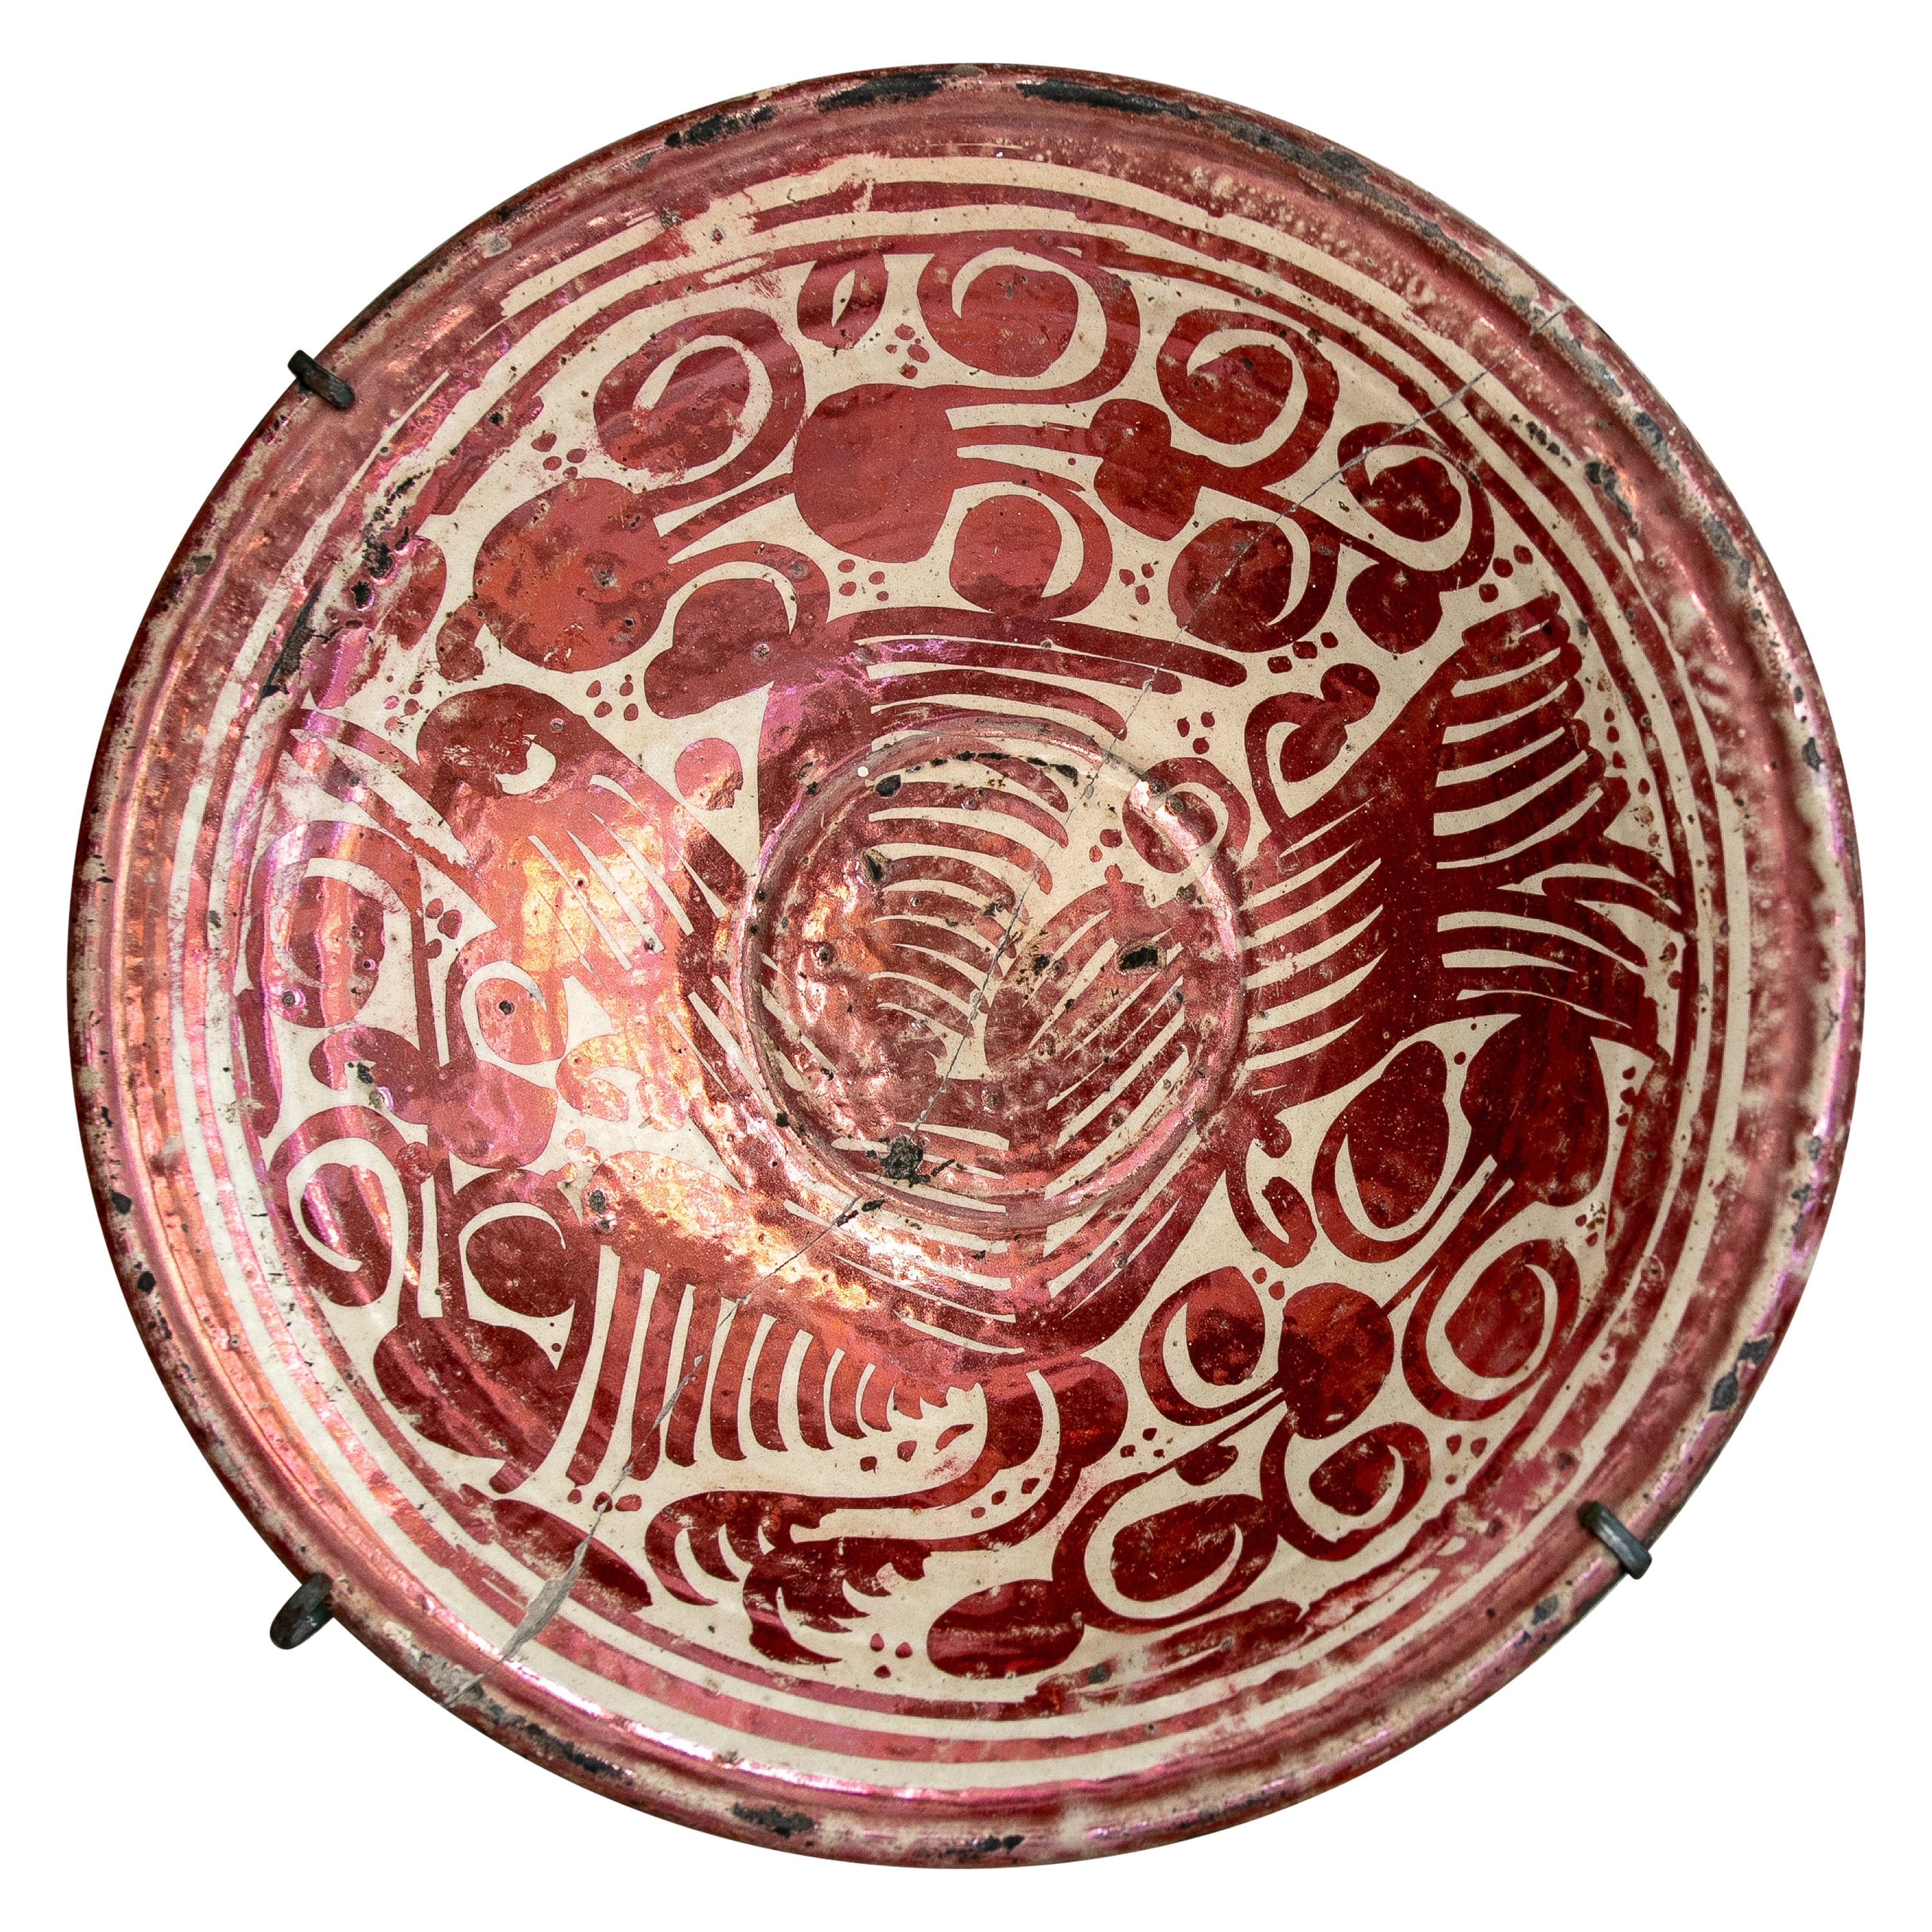 Spanischer Valencian Manises-Lüstergeschirr-Keramikteller aus dem 17. Jahrhundert